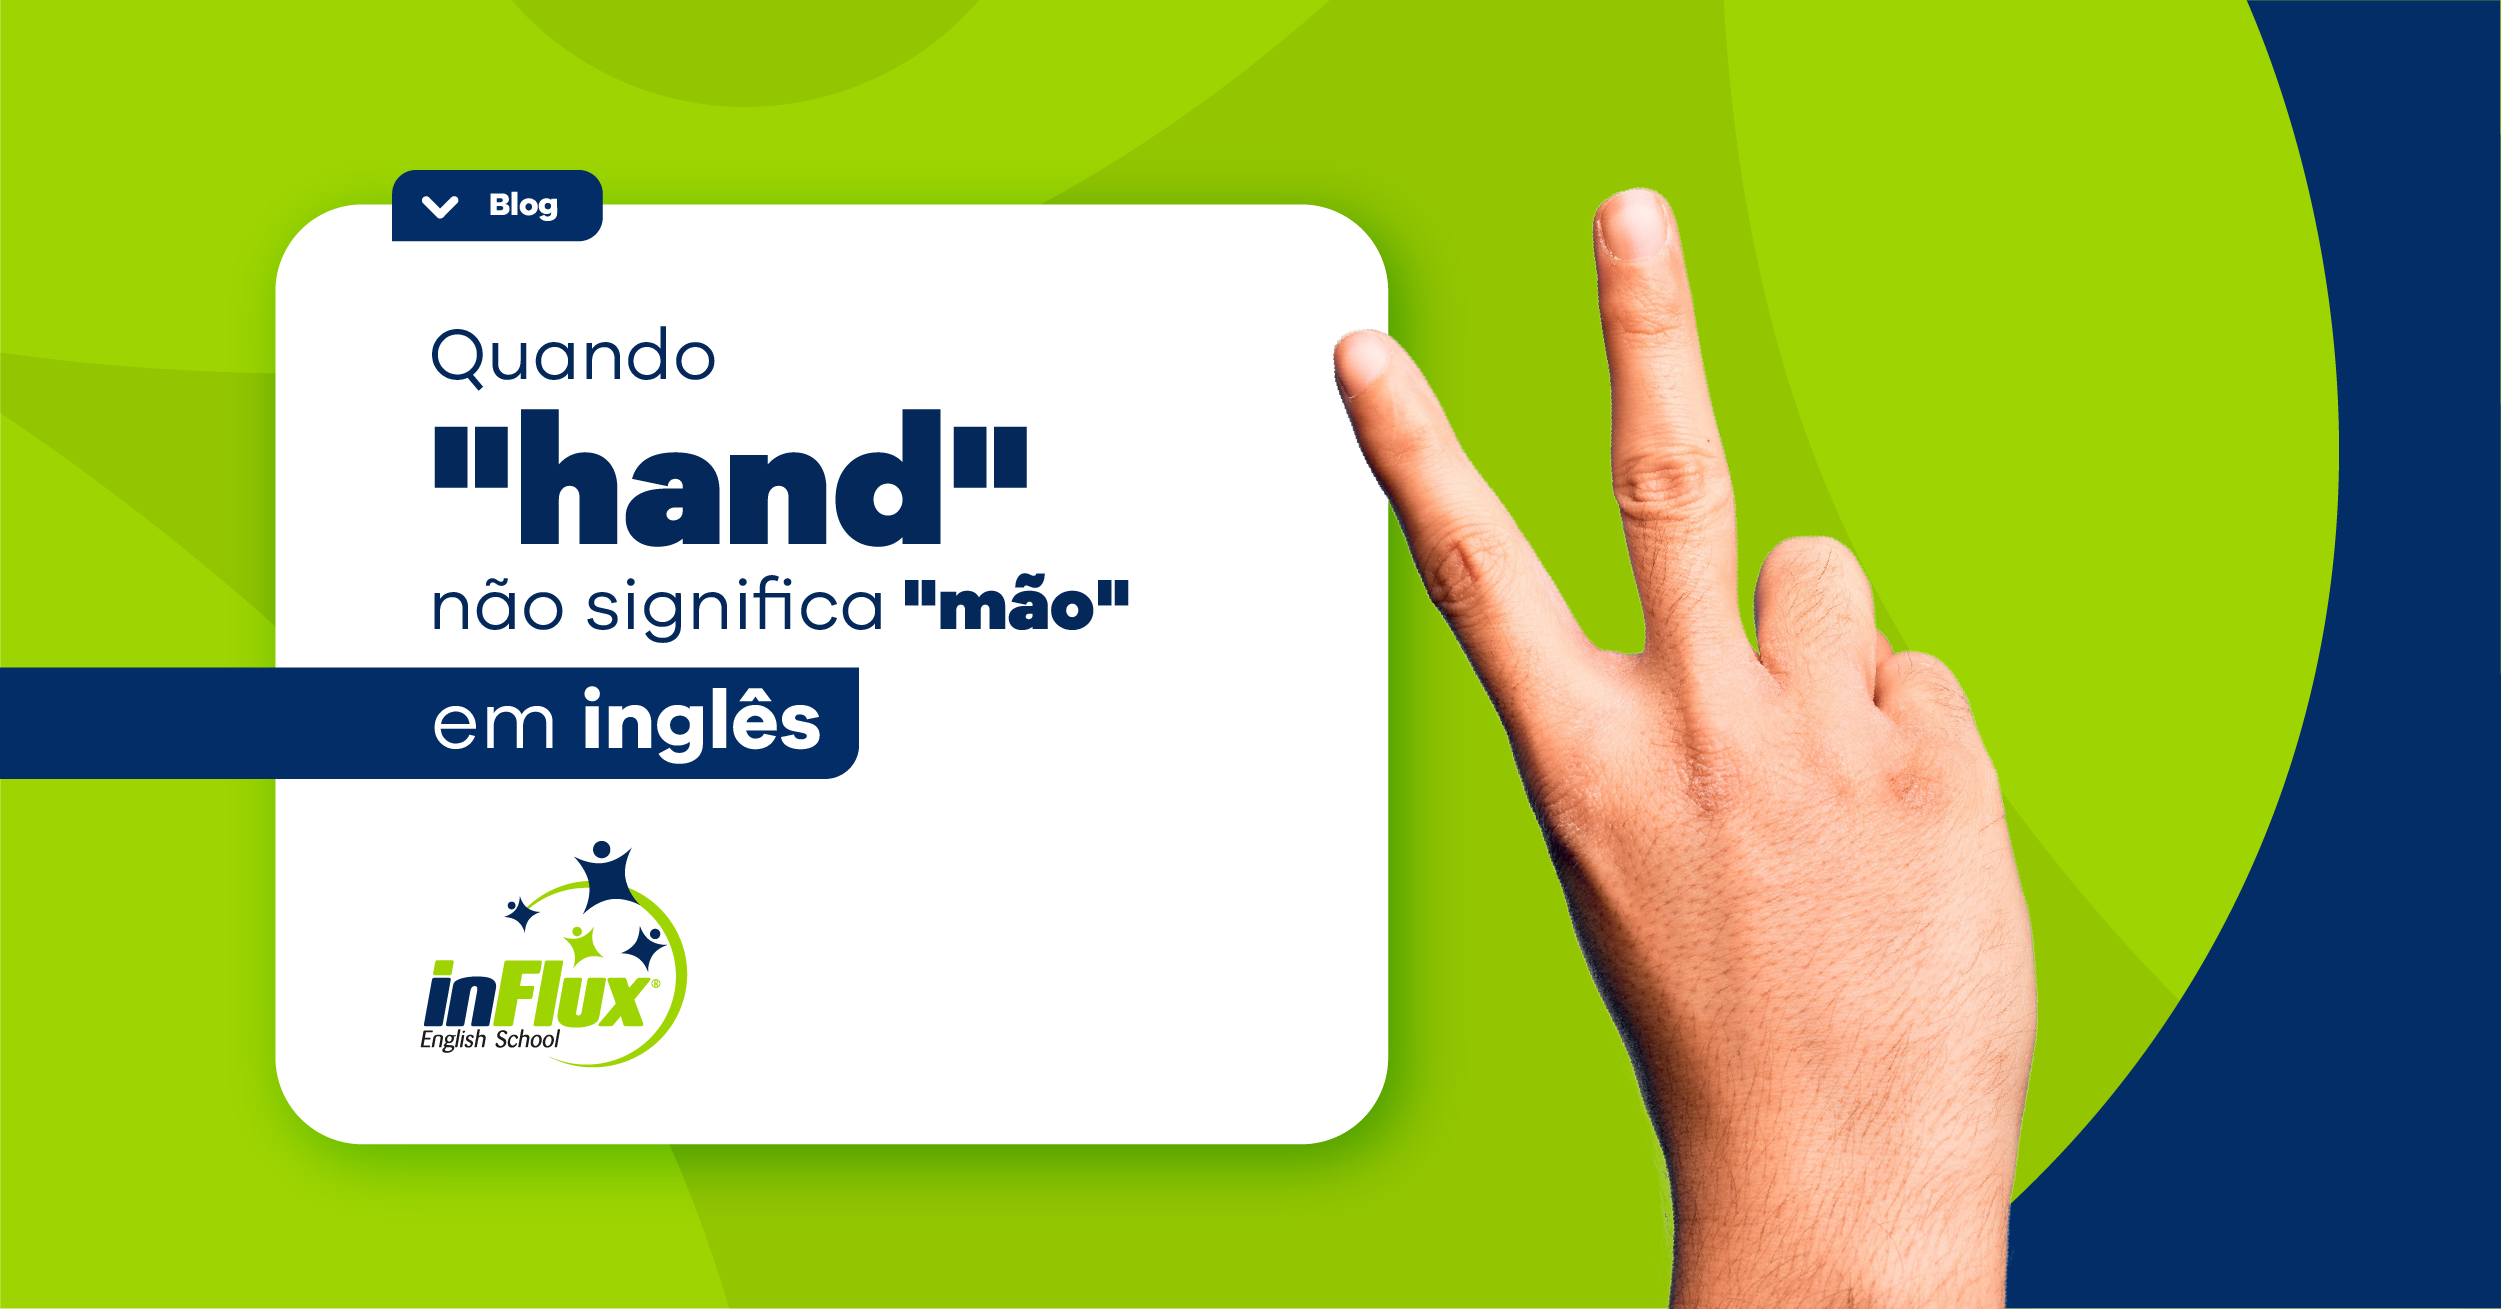 Quando “hand” não significa “mão” em inglês